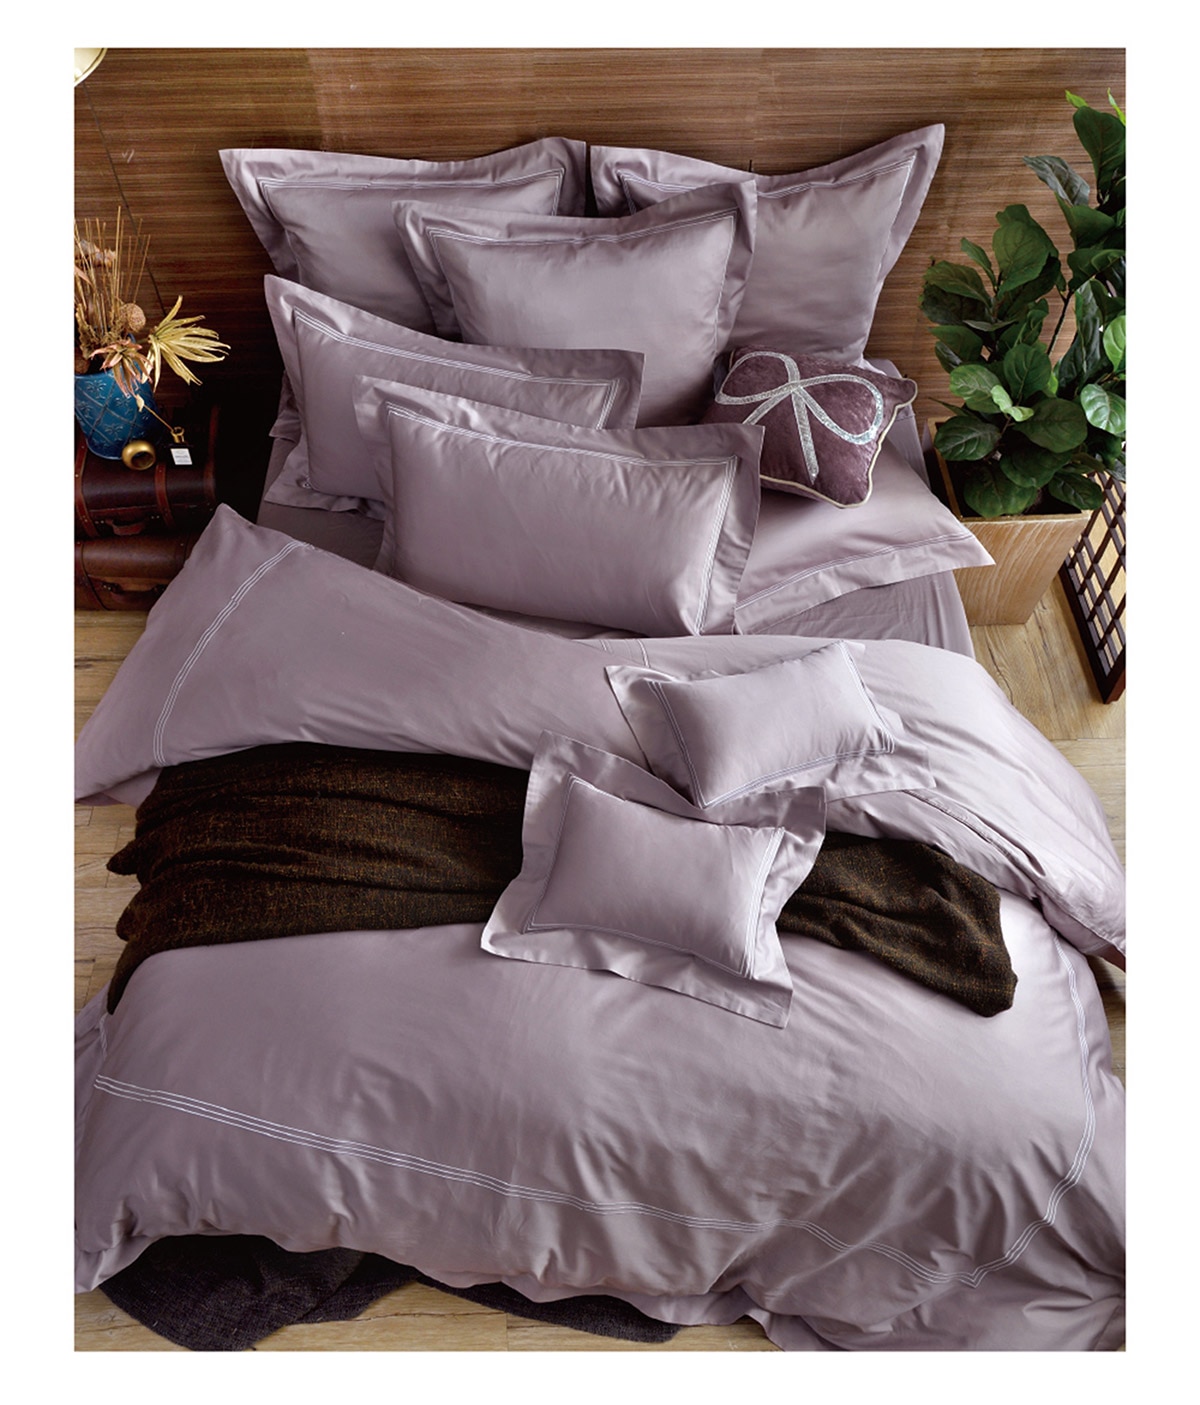 雙人刺繡被套床包四件組-甜藕粉,輕量薄被,徹夜好眠,可於春夏當涼被使用,於秋冬放入被胎,增加保暖度.